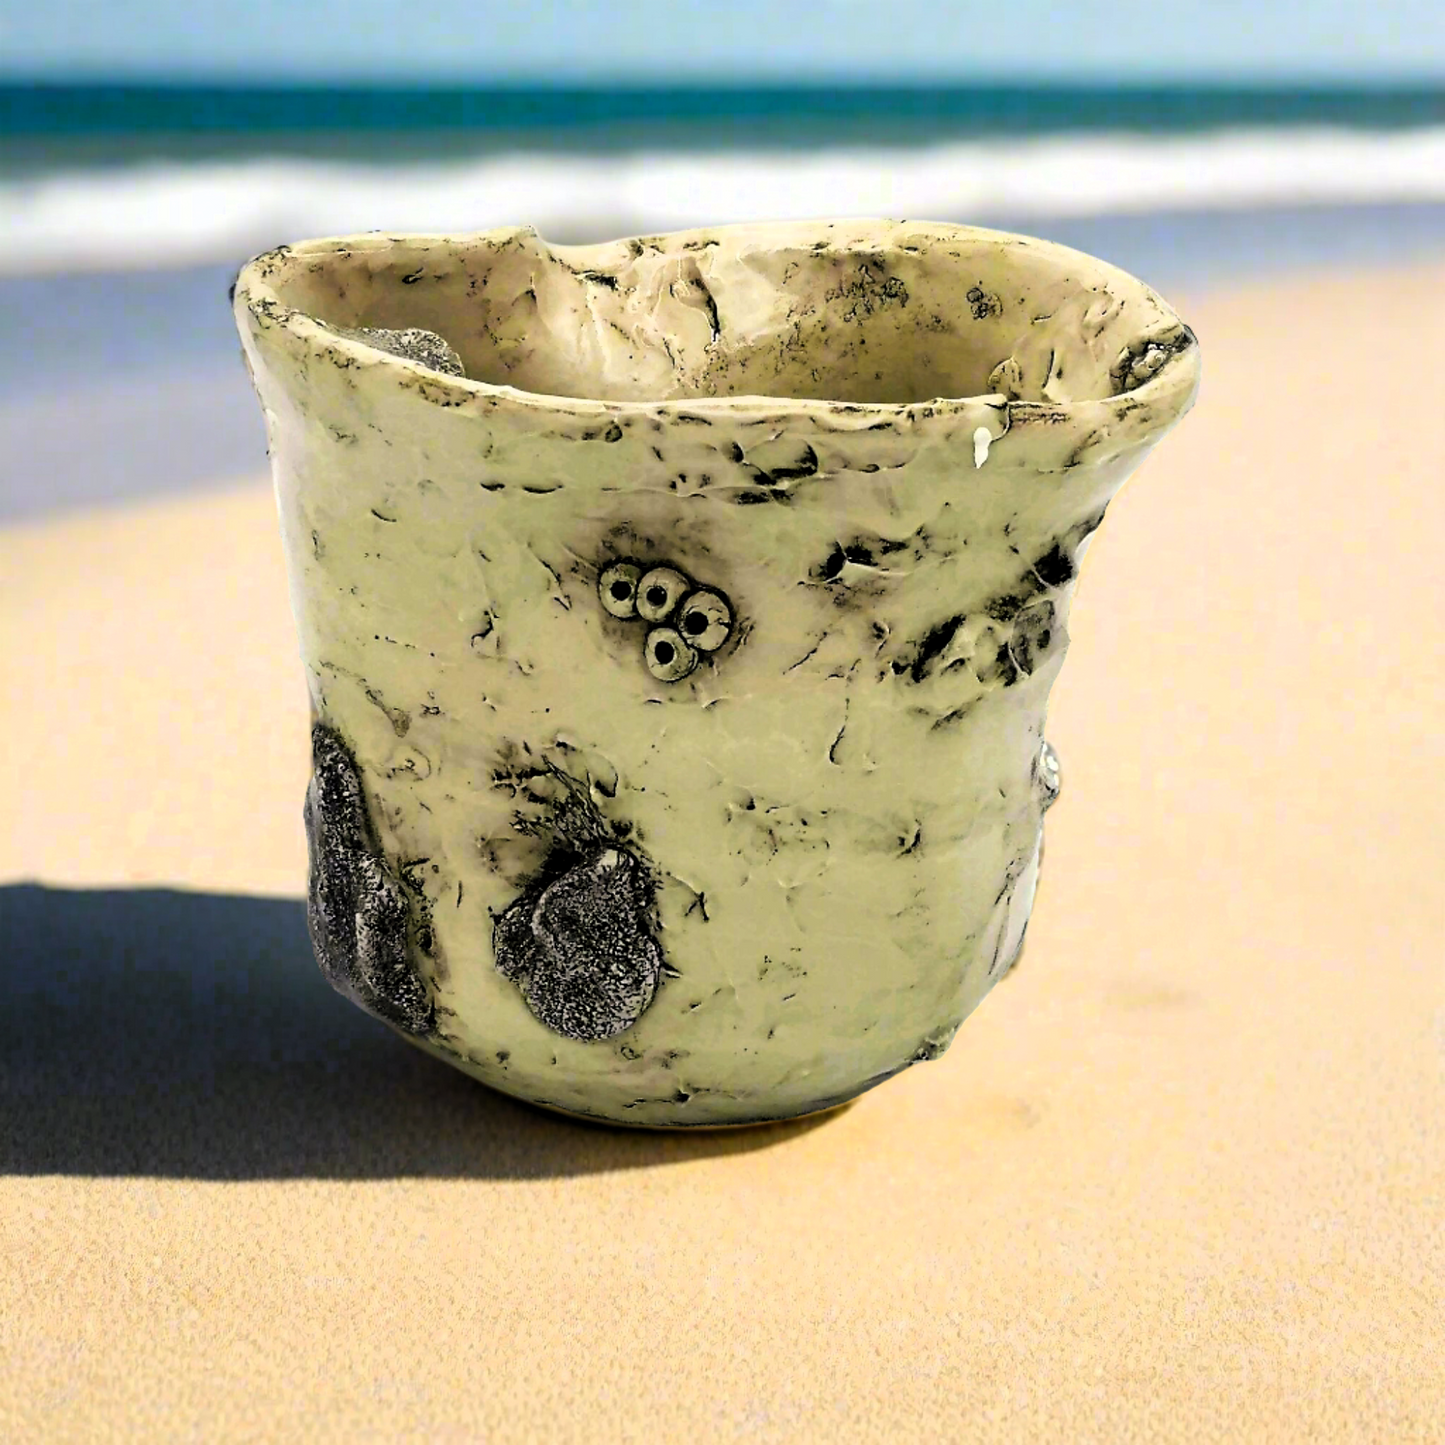 Handgefertigte Keramikvase, skulpturale Vase, Stranddekoration, Muschelkeramik-Ikebana-Vase, ästhetische Dekorationsobjekte, Meereswellenvase